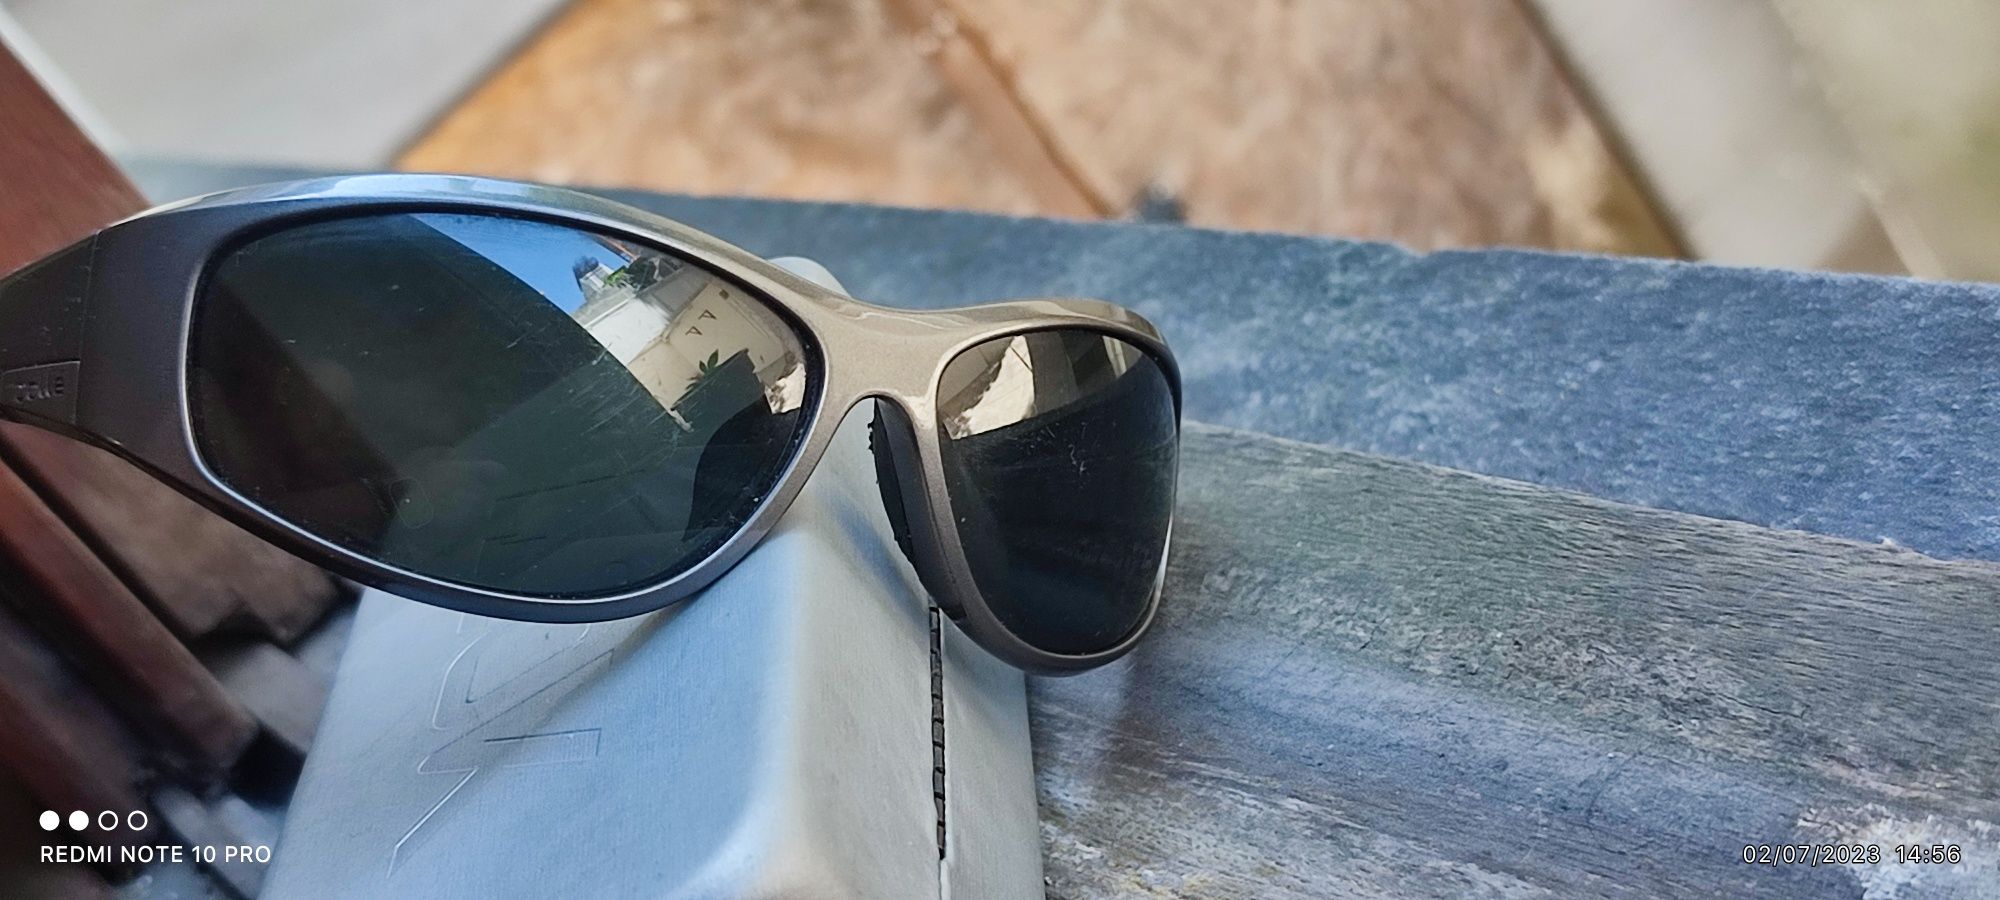 Vendo Óculos de Sol Bollé Polarized como Novos